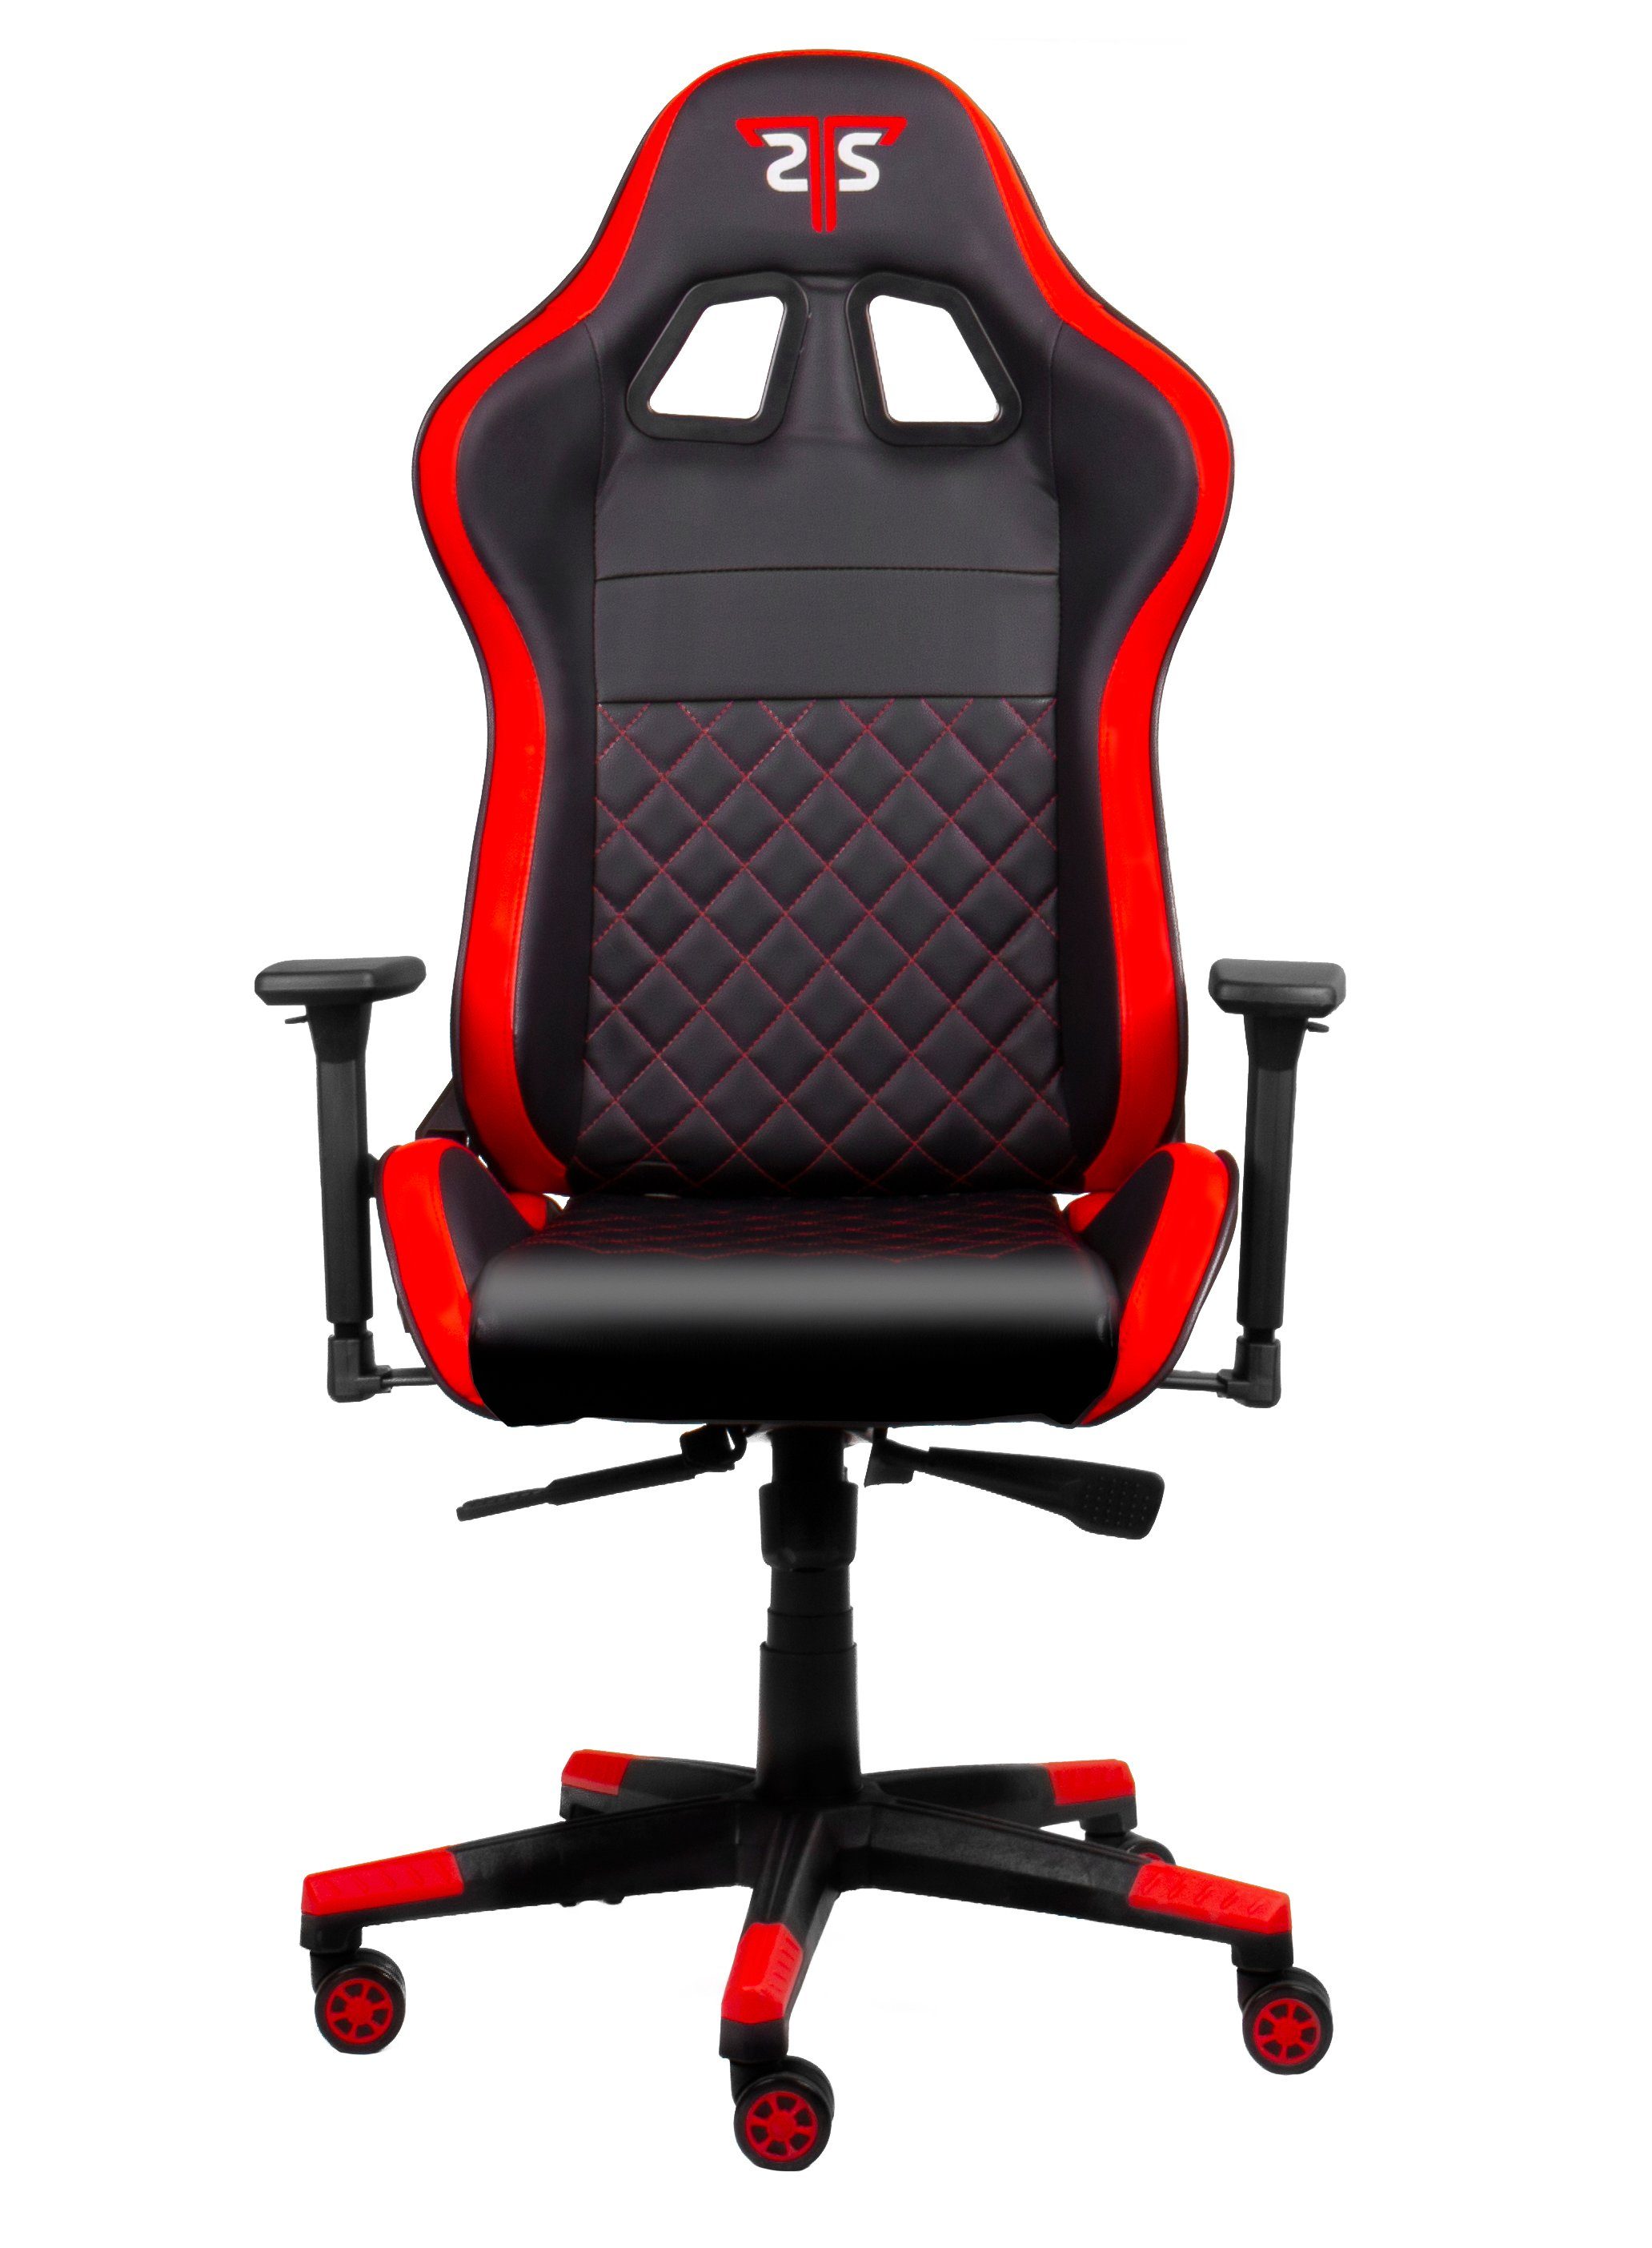 Hyrican Gaming-Stuhl XL" "Striker Code Gamingstuhl,Schreibtischstuhl ergonomischer Red